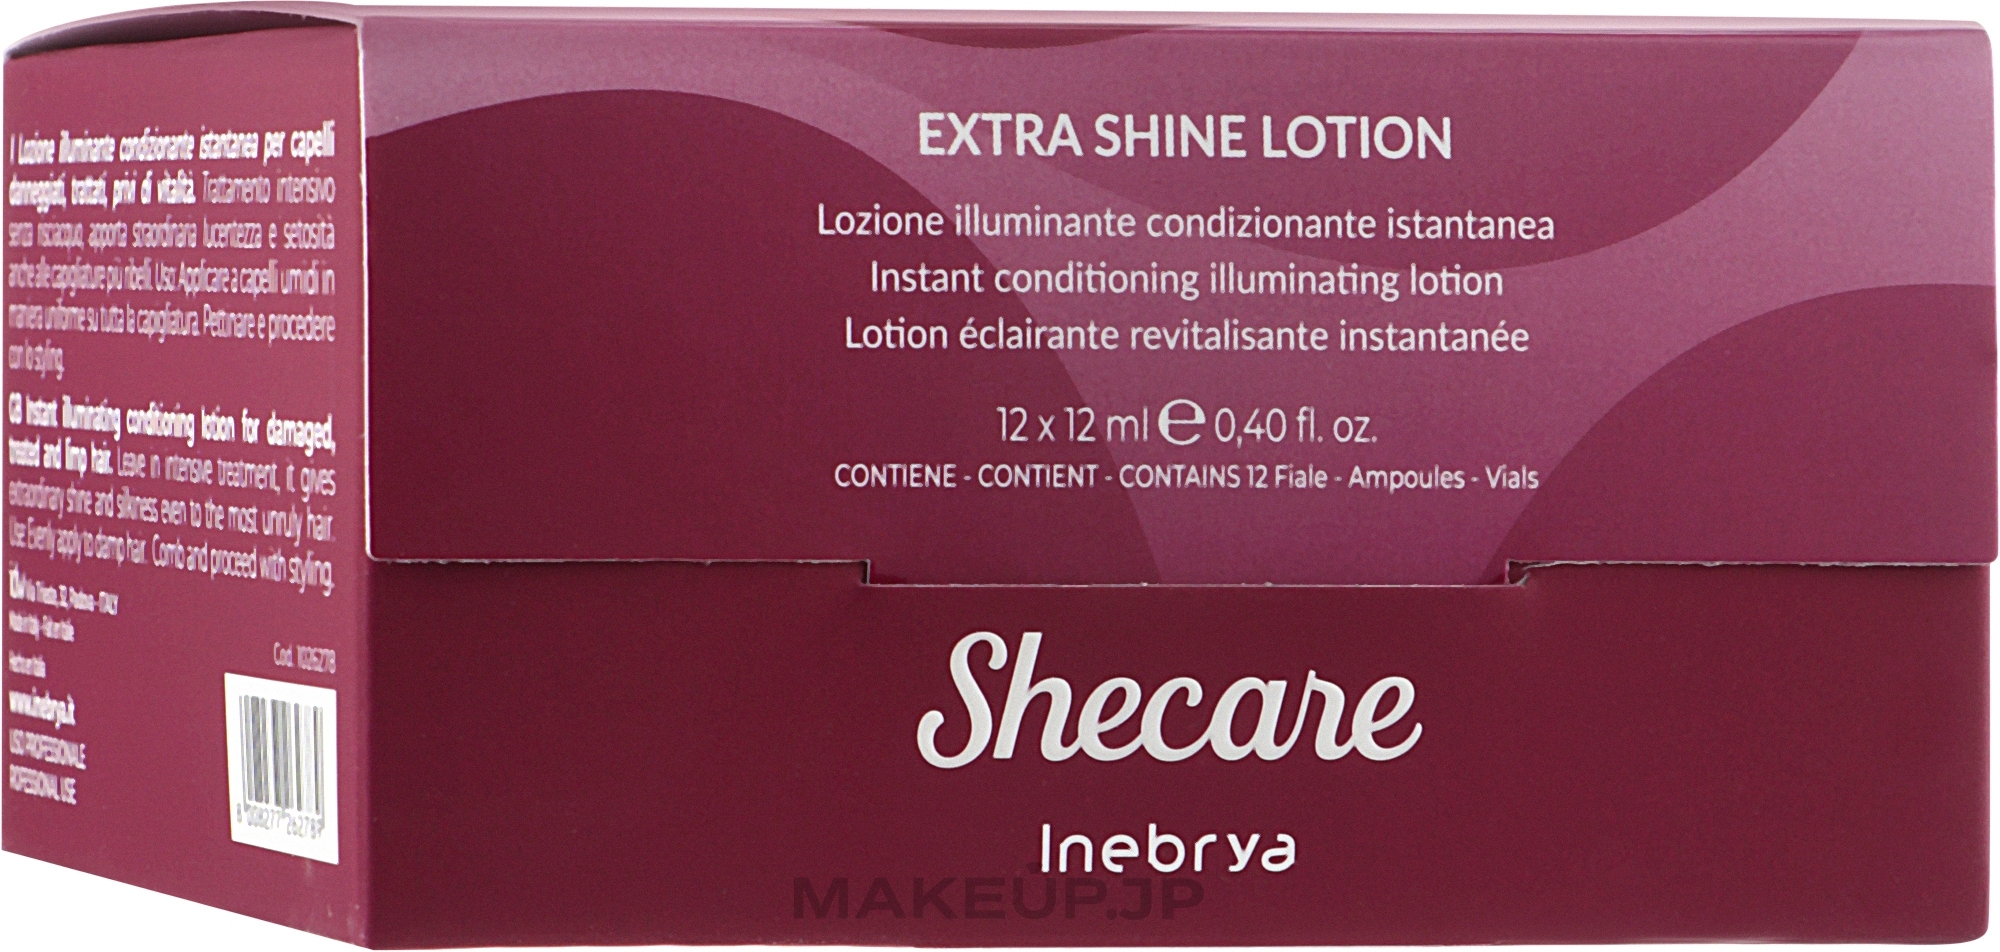 Extra Shine Hair Lotion - Inebrya She Care Extra Shine Lotion — photo 12 x 12 ml